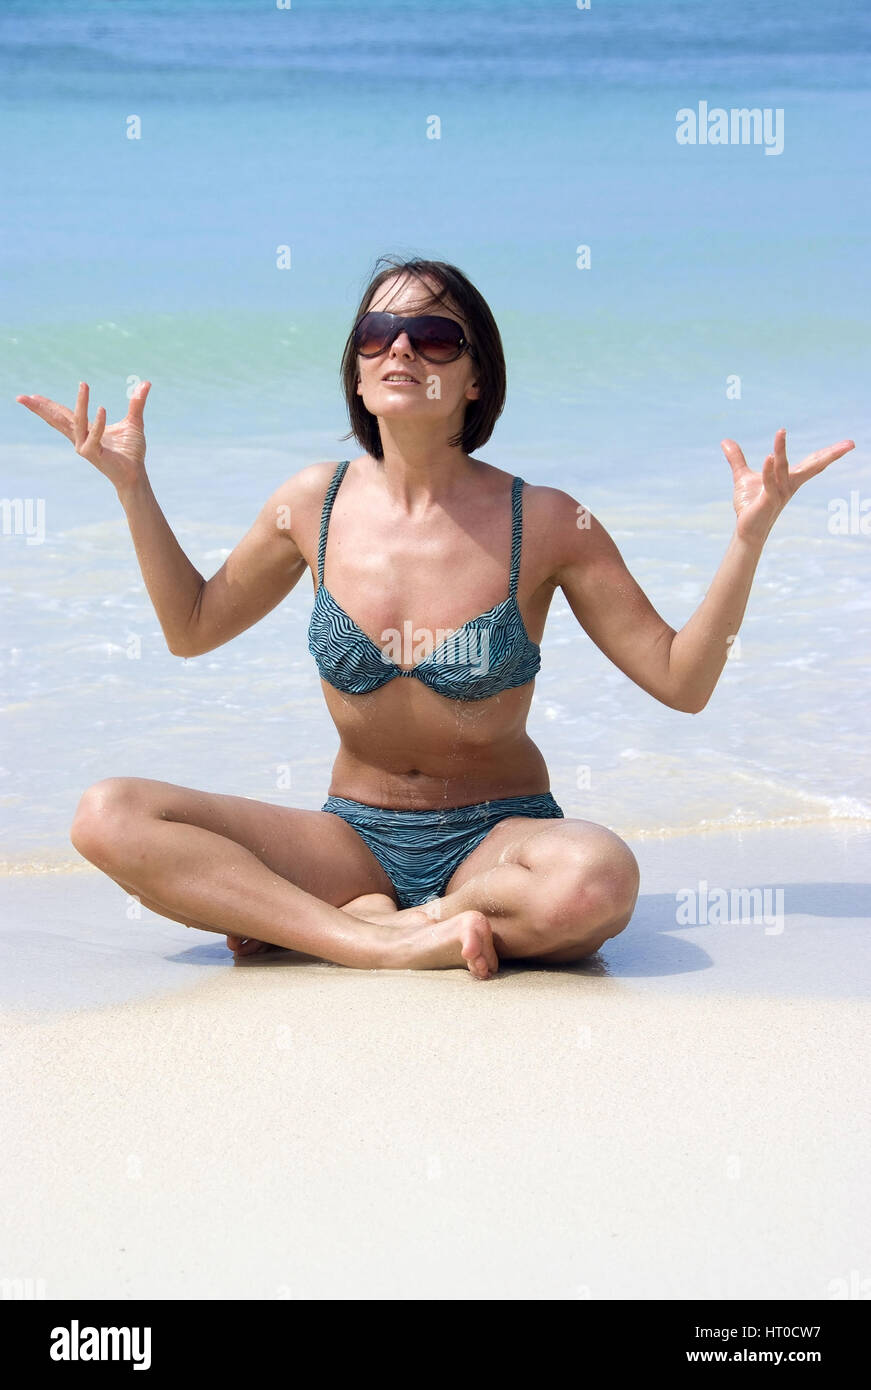 Frau macht Joga am Sandstrand - woman does yoga on the beach Stock Photo